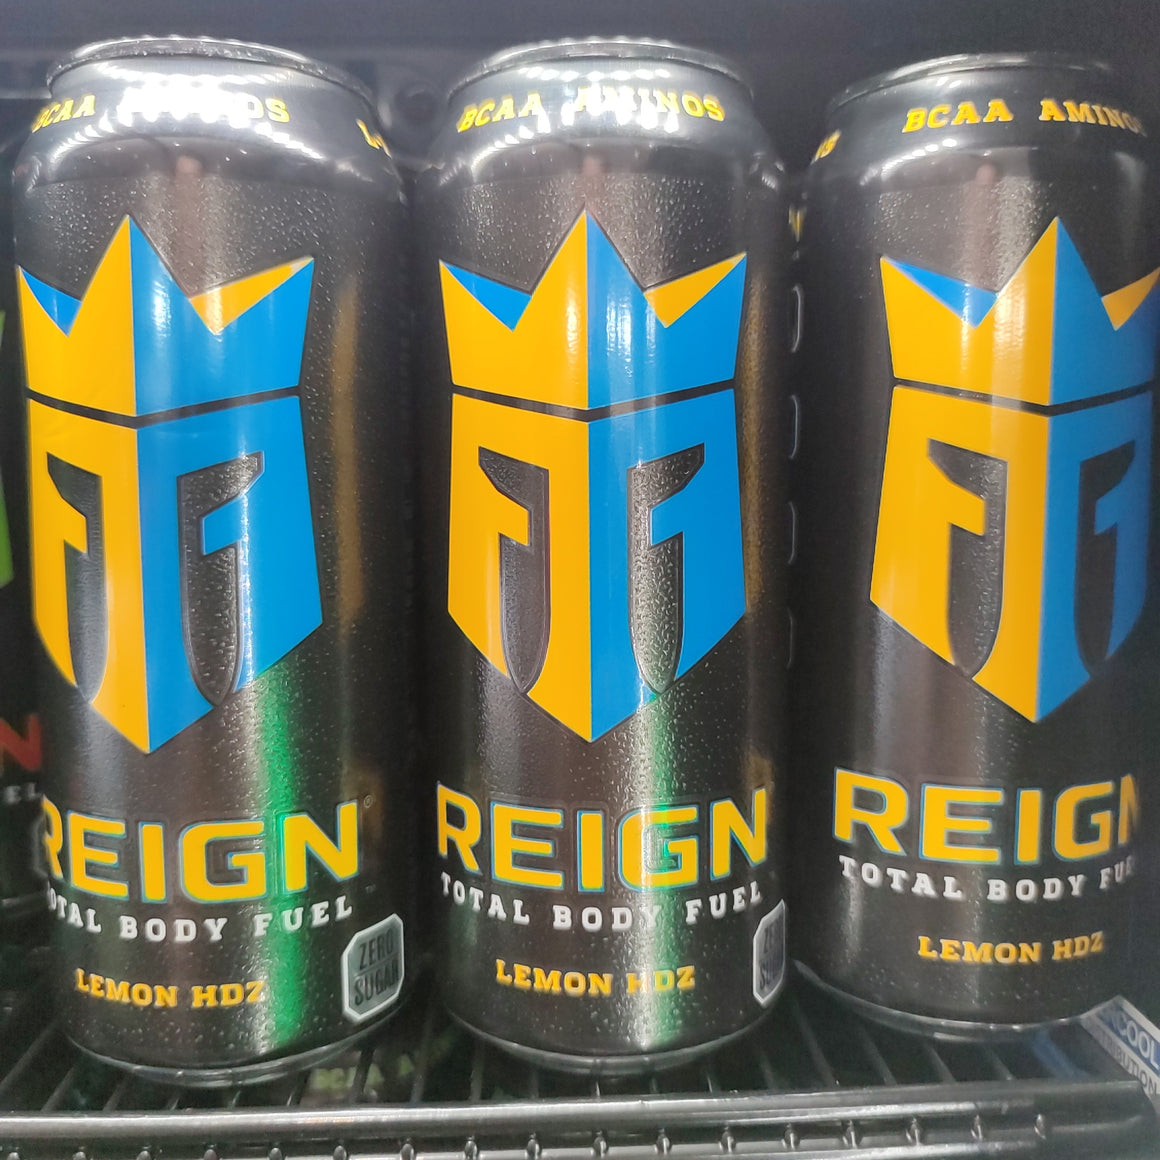 Reign Rtd Lemon